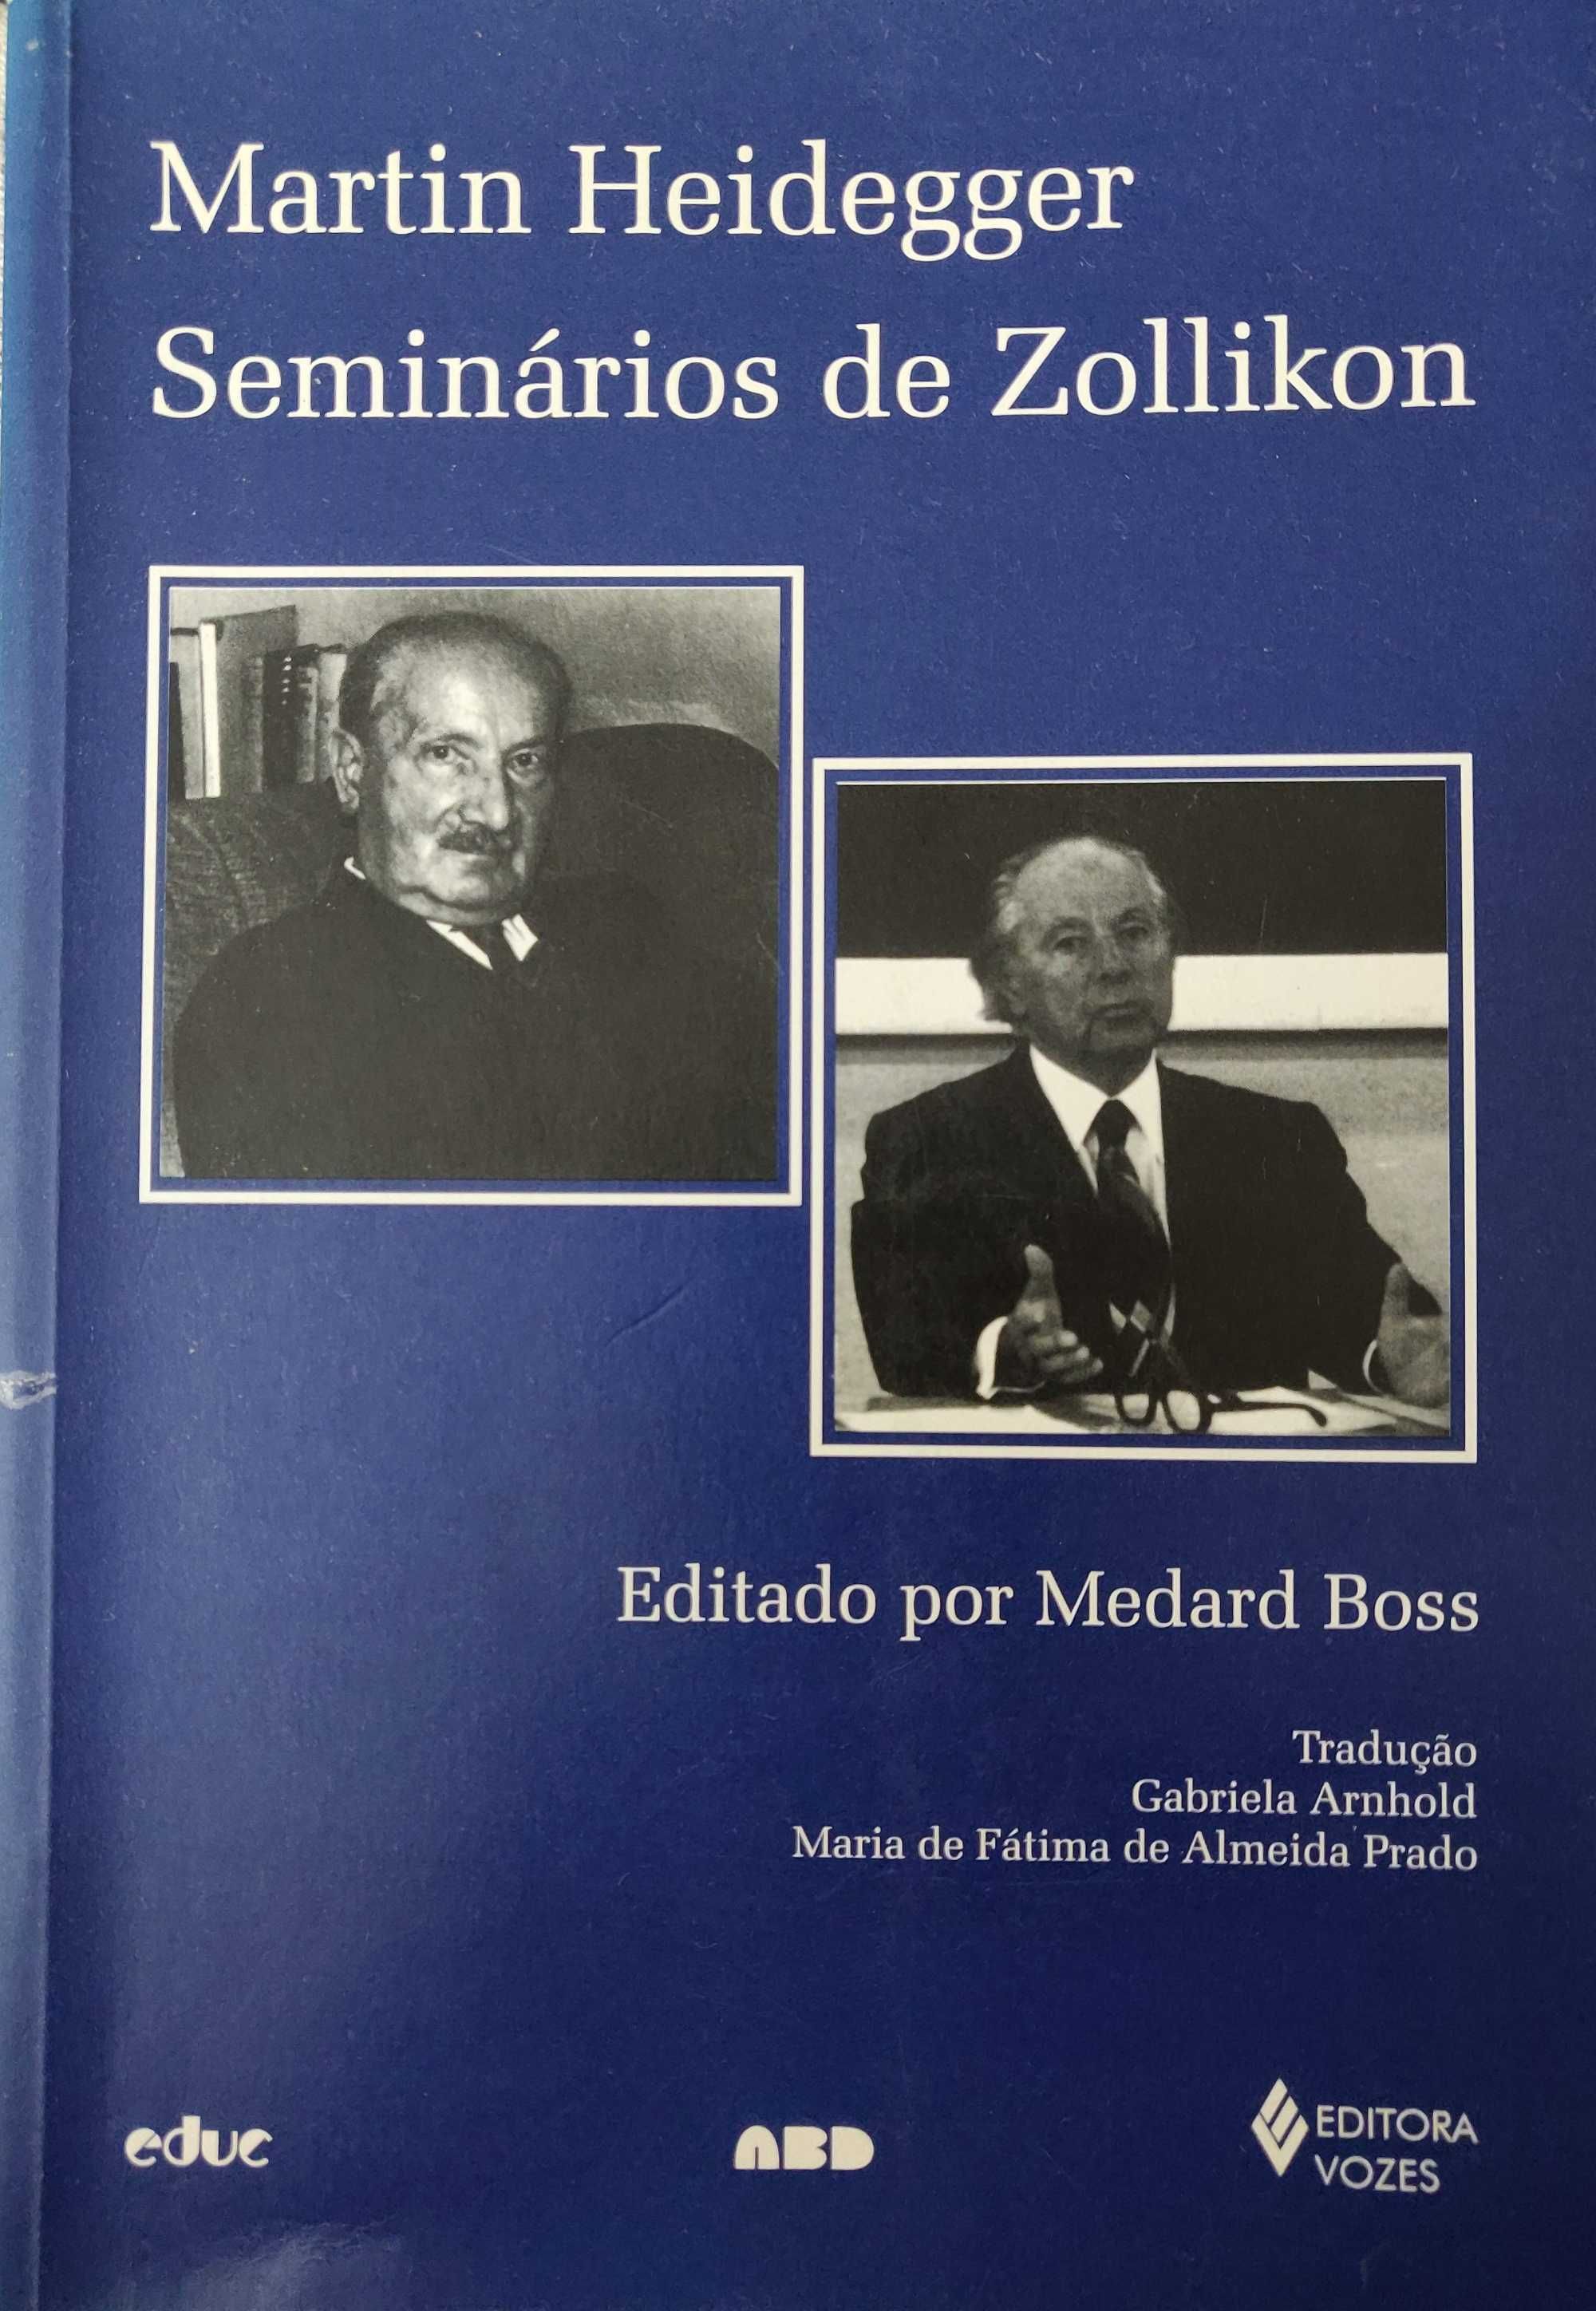 Martin Heidegger - Seminários de Zollikon